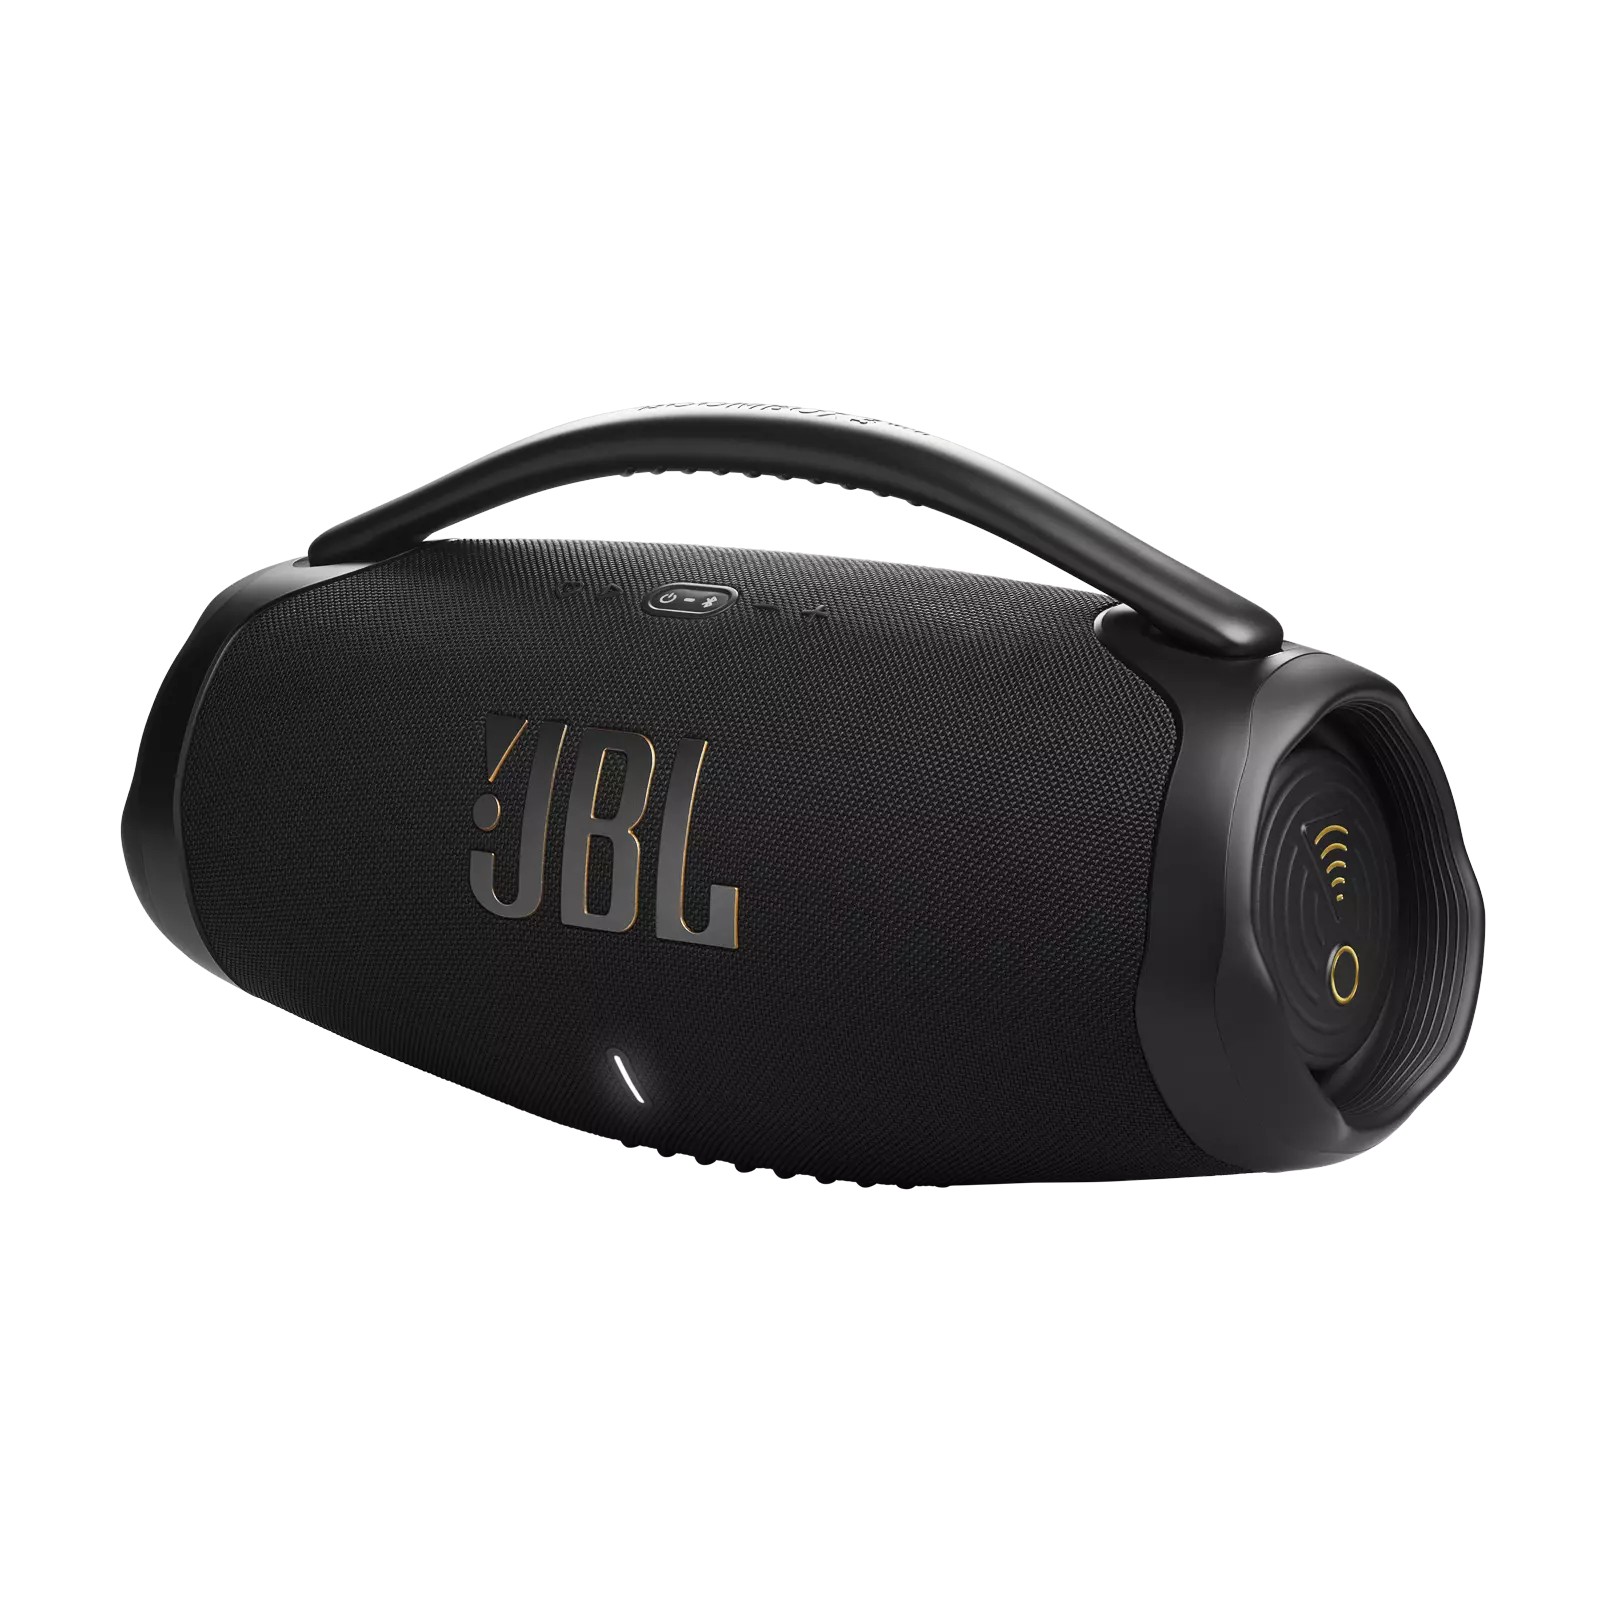 JBL Boombox 3 WiFi